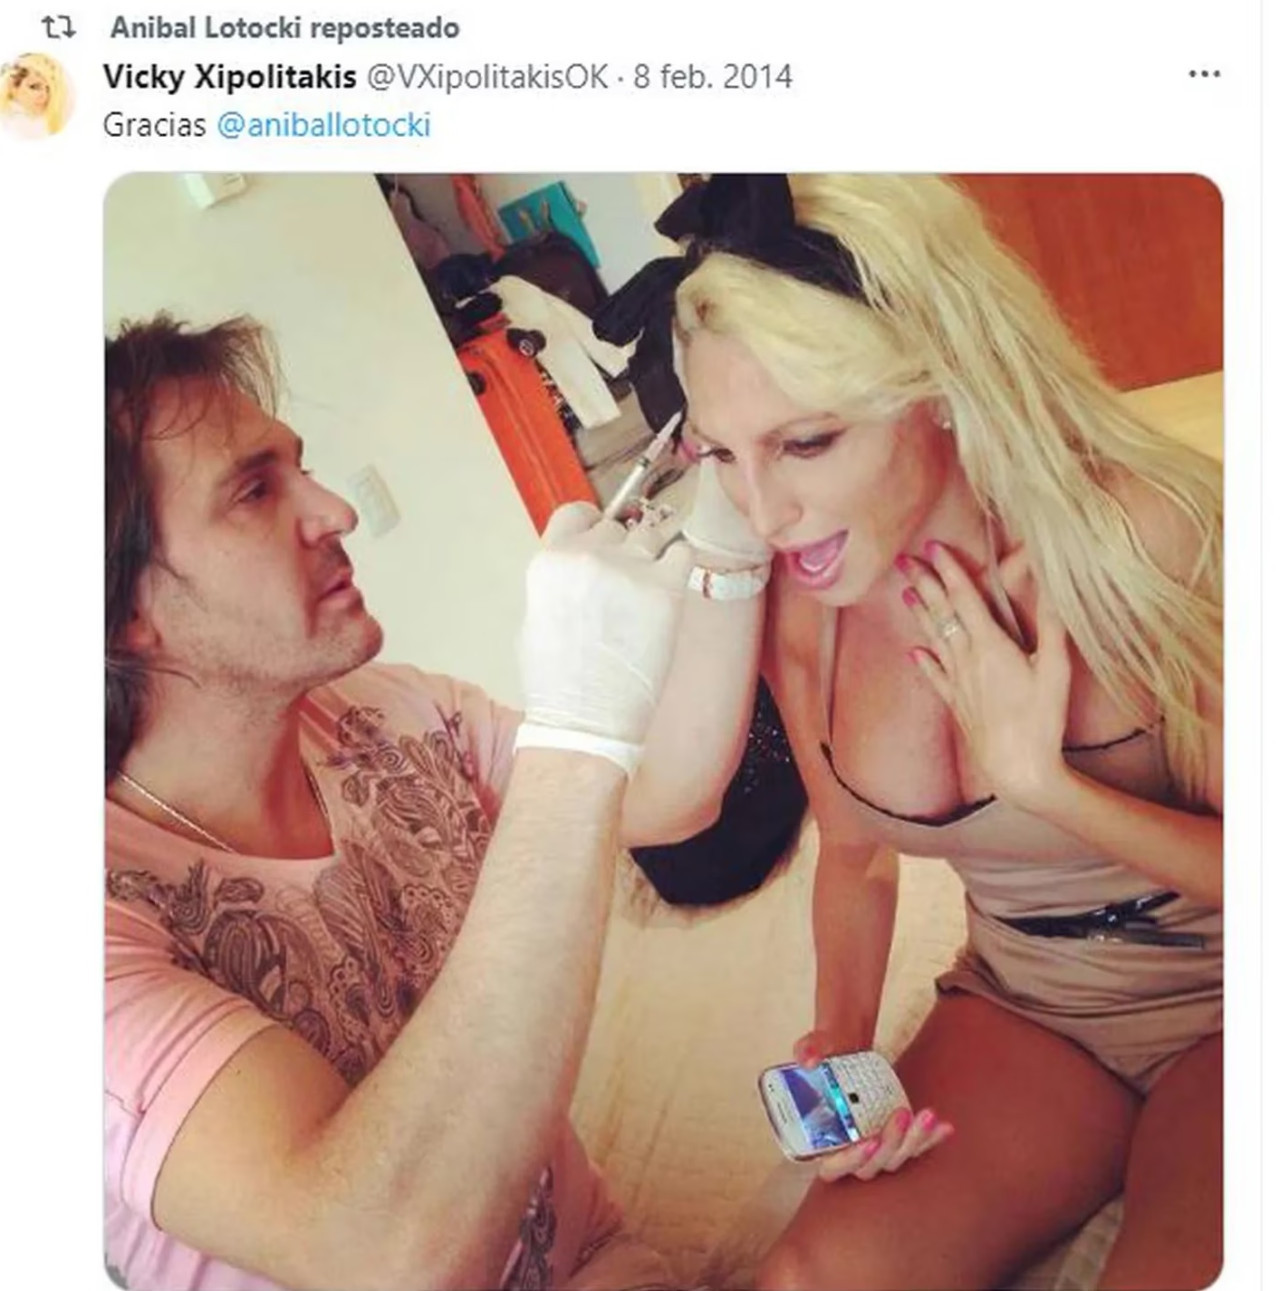 Vicky Xipolitakis en 2014, durante un retoque estético con Lotocki. Foto: Twitter